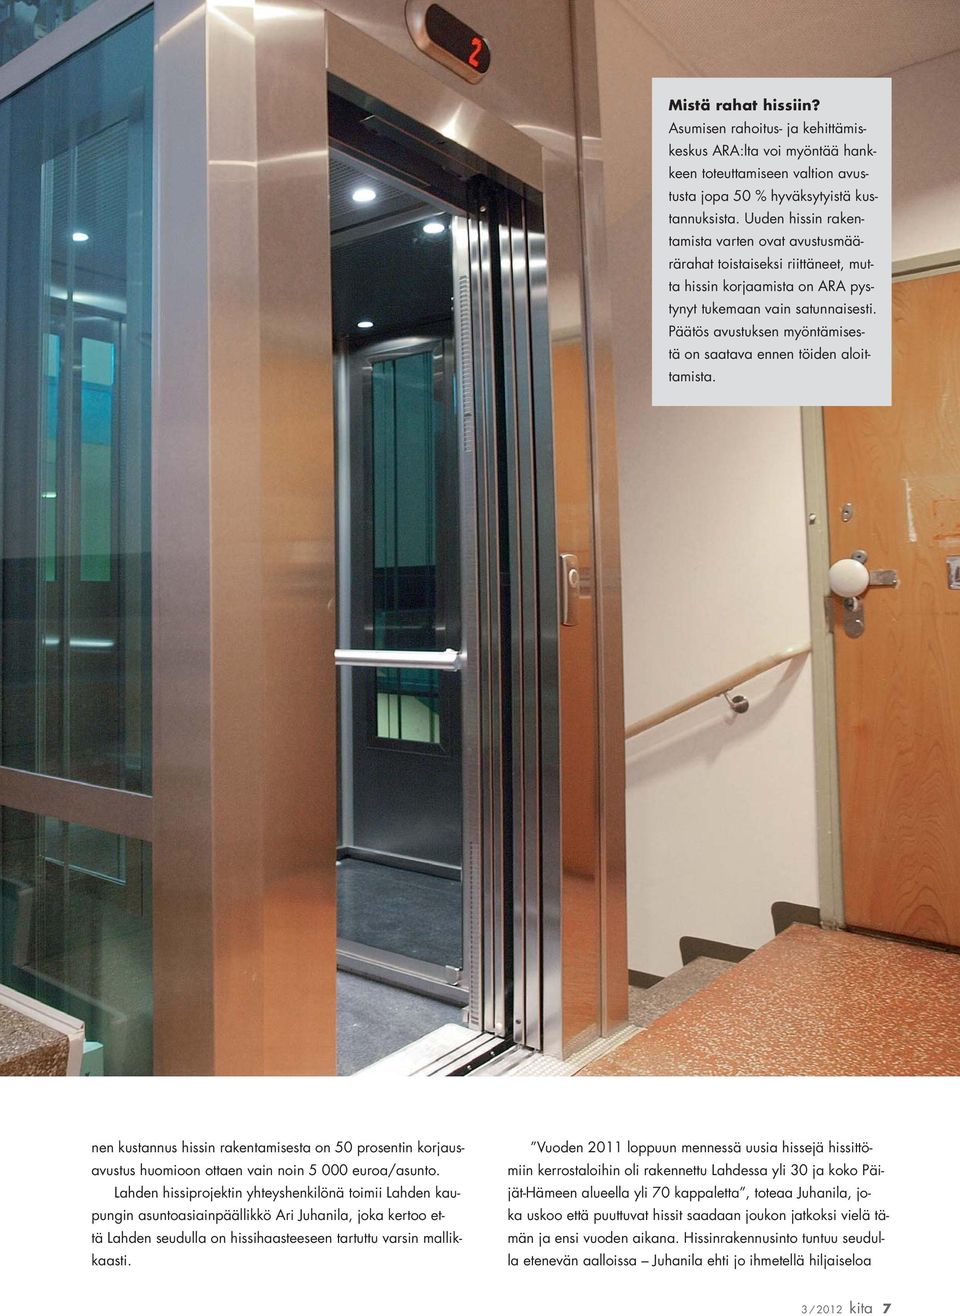 Päätös avustuksen myöntämisestä on saatava ennen töiden aloittamista. nen kustannus hissin rakentamisesta on 50 prosentin korjausavustus huomioon ottaen vain noin 5 000 euroa/asunto.